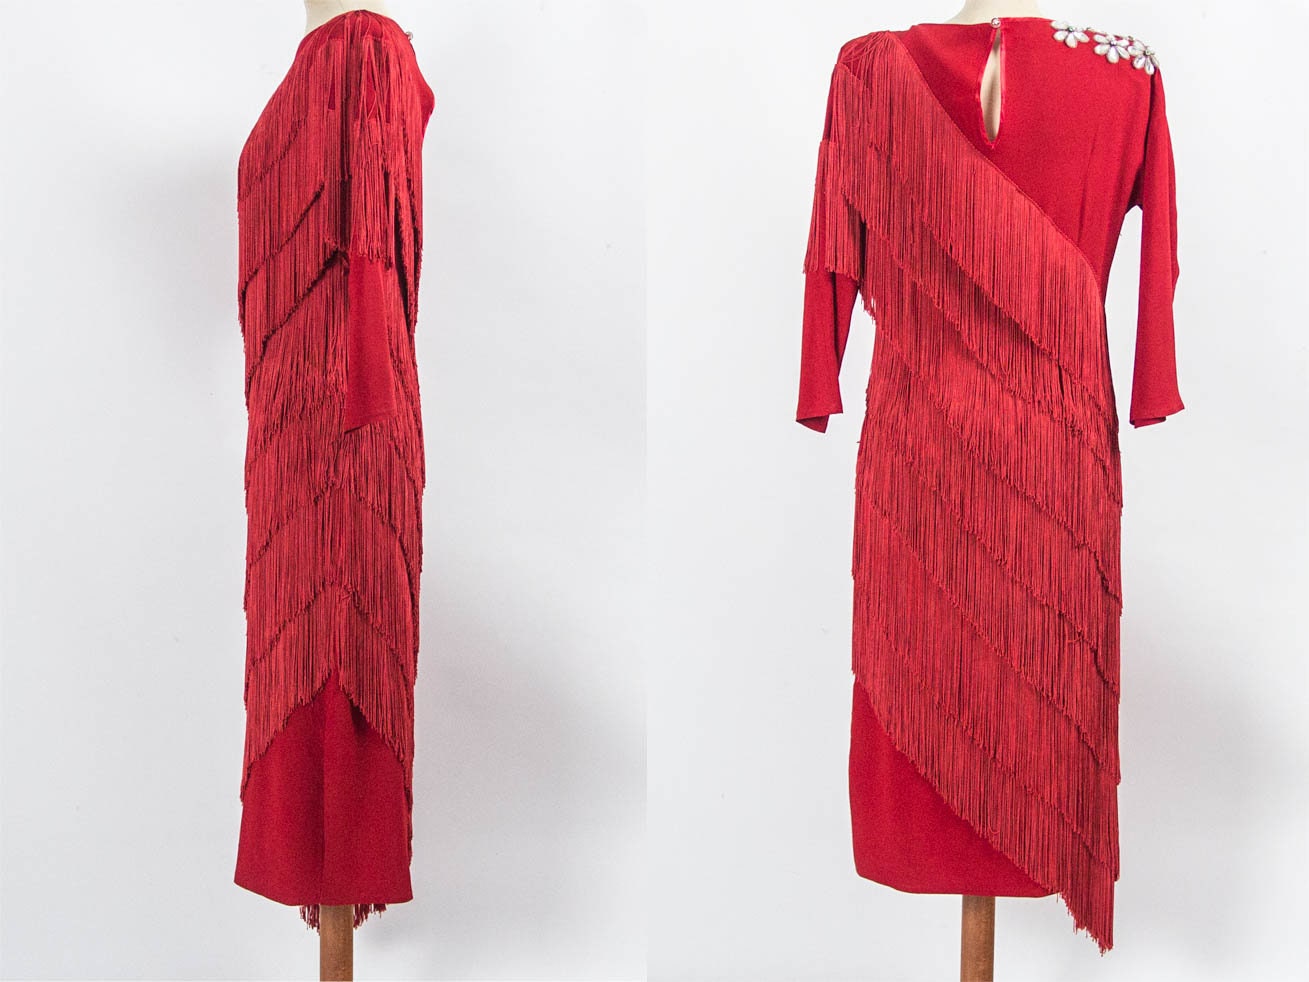 80s Party Dress Red Dress 80s Vintage Dress Fringes Dress - Etsy